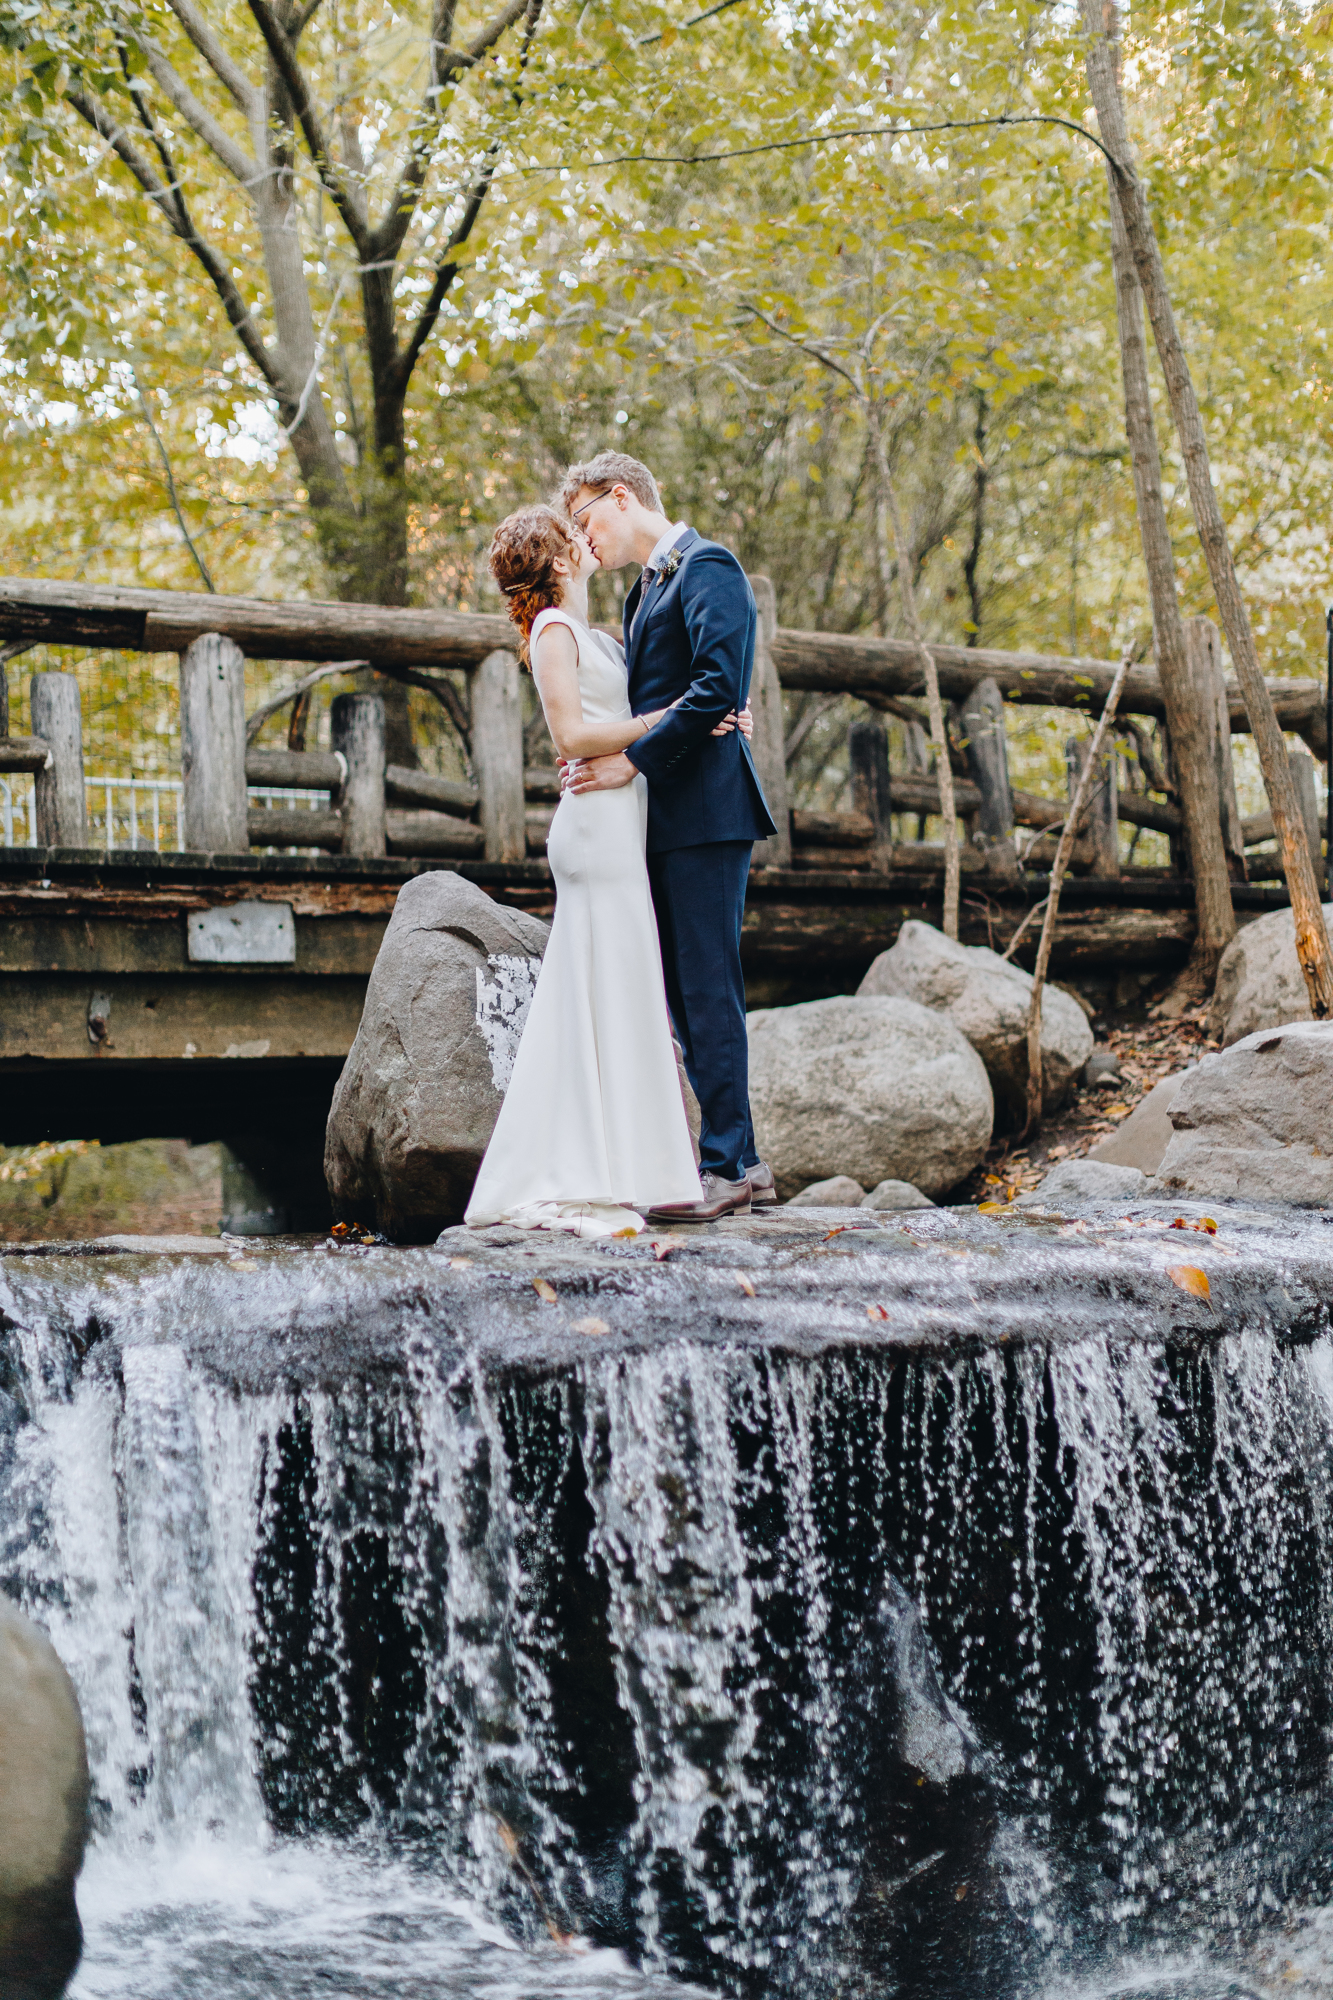 Binnen Bridge wedding photos in Prospect Park